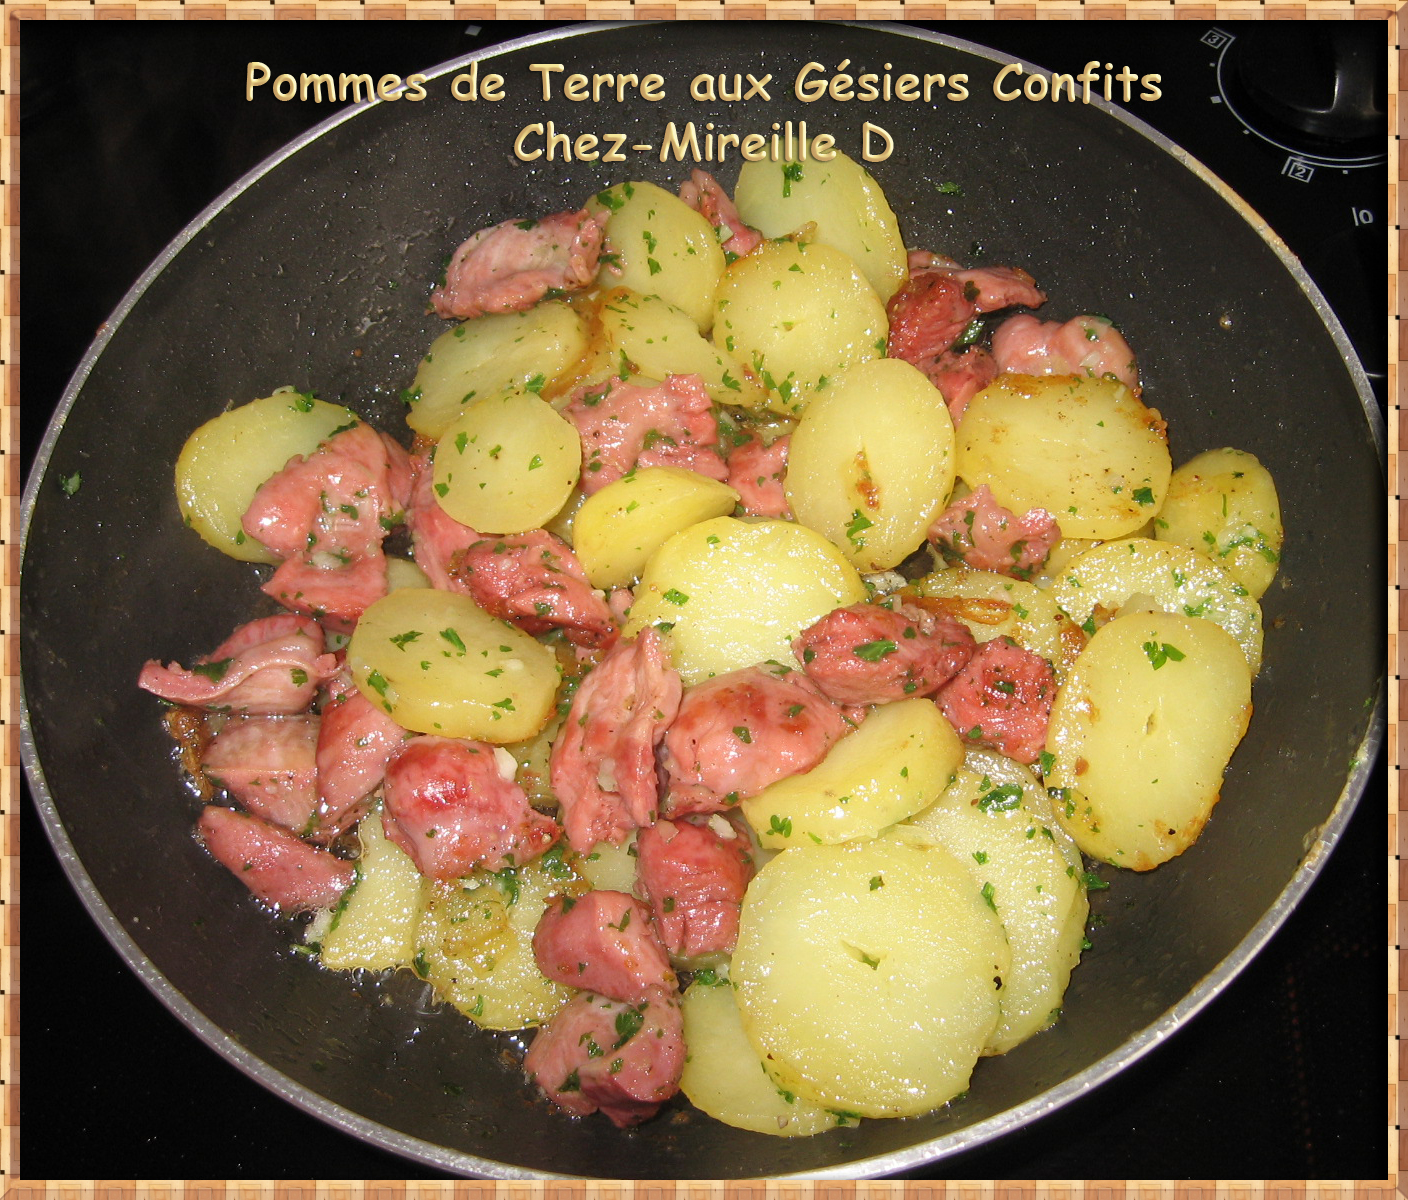 Pommes de terre aux Gésiers de Poulet Confits - Chez-Mireille D